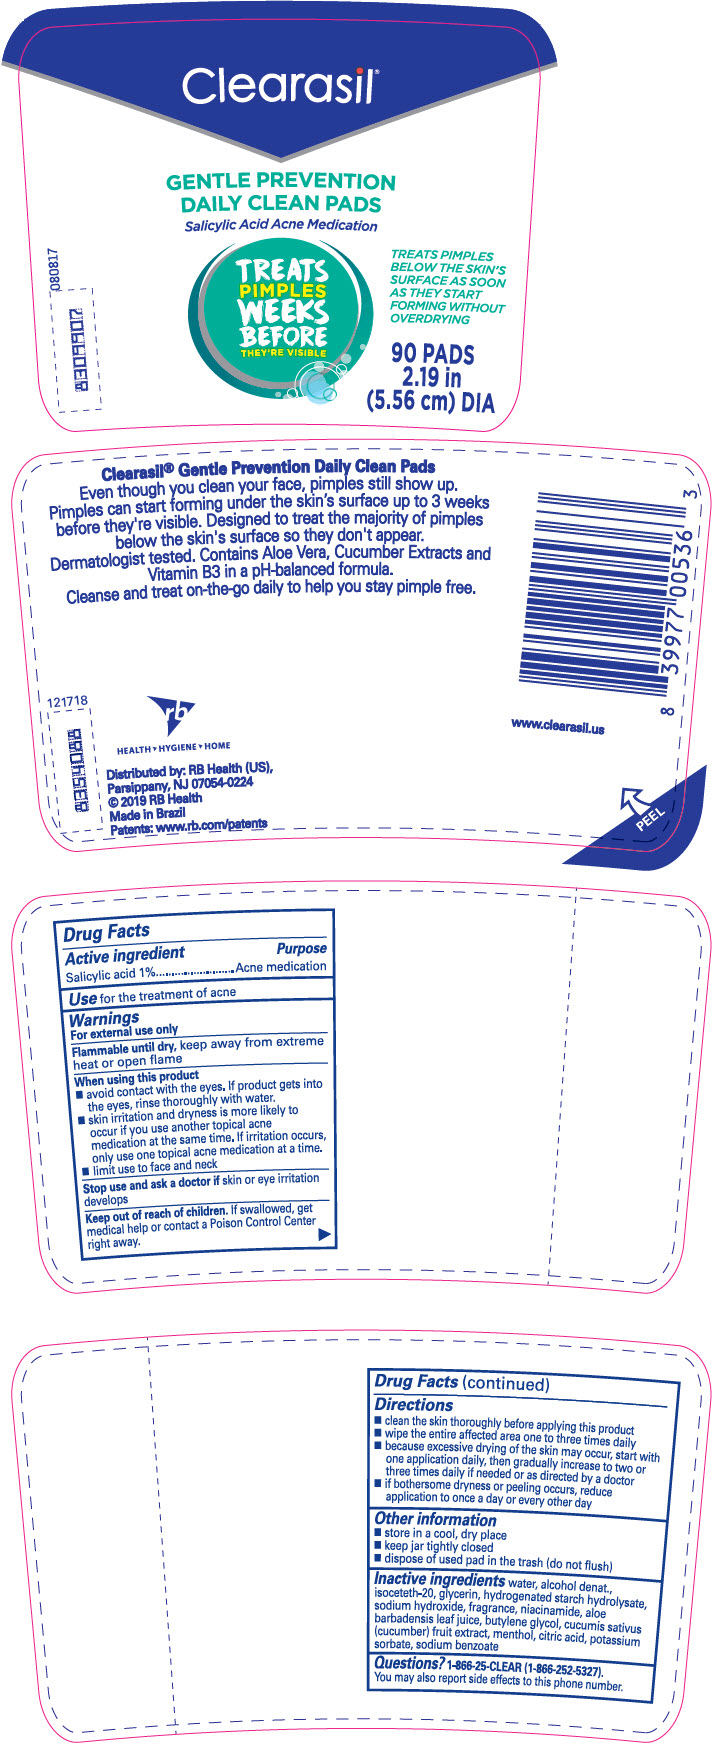 PRINCIPAL DISPLAY PANEL - 90 Pad Jar Label